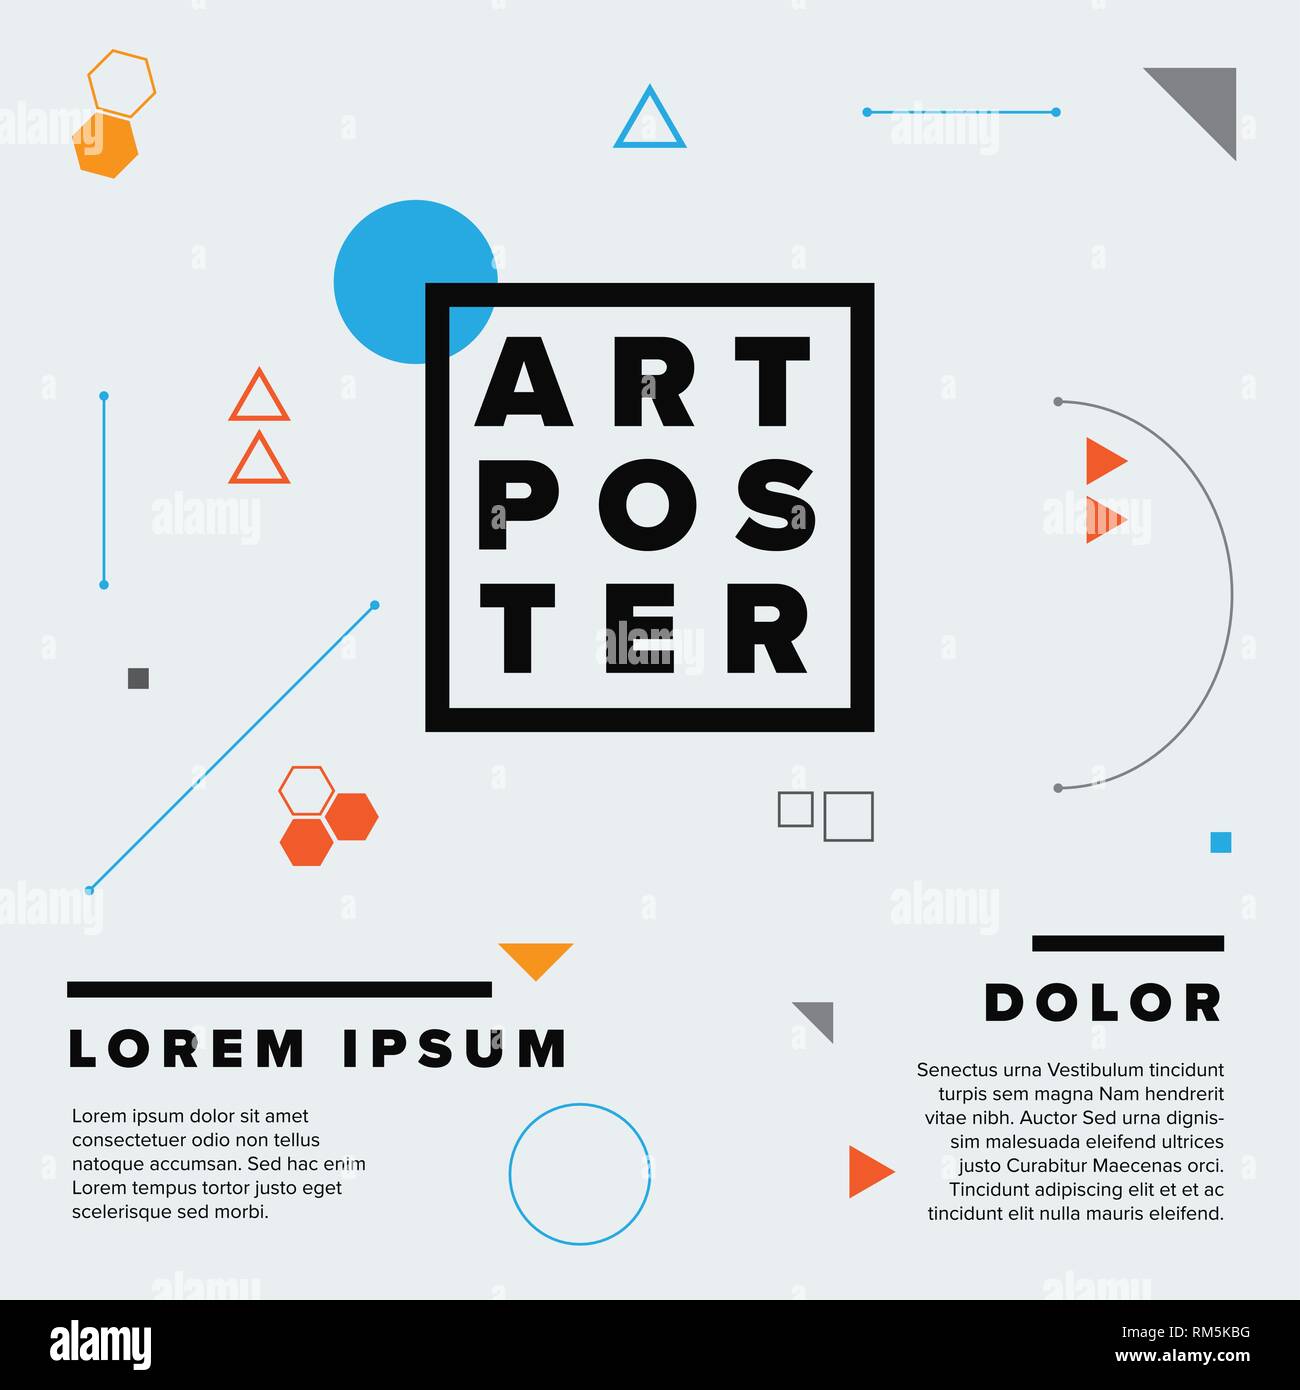 El arte moderna de geometría vectorial poster plantilla para la exposición de arte, galería, concierto o fiesta de baile Ilustración del Vector